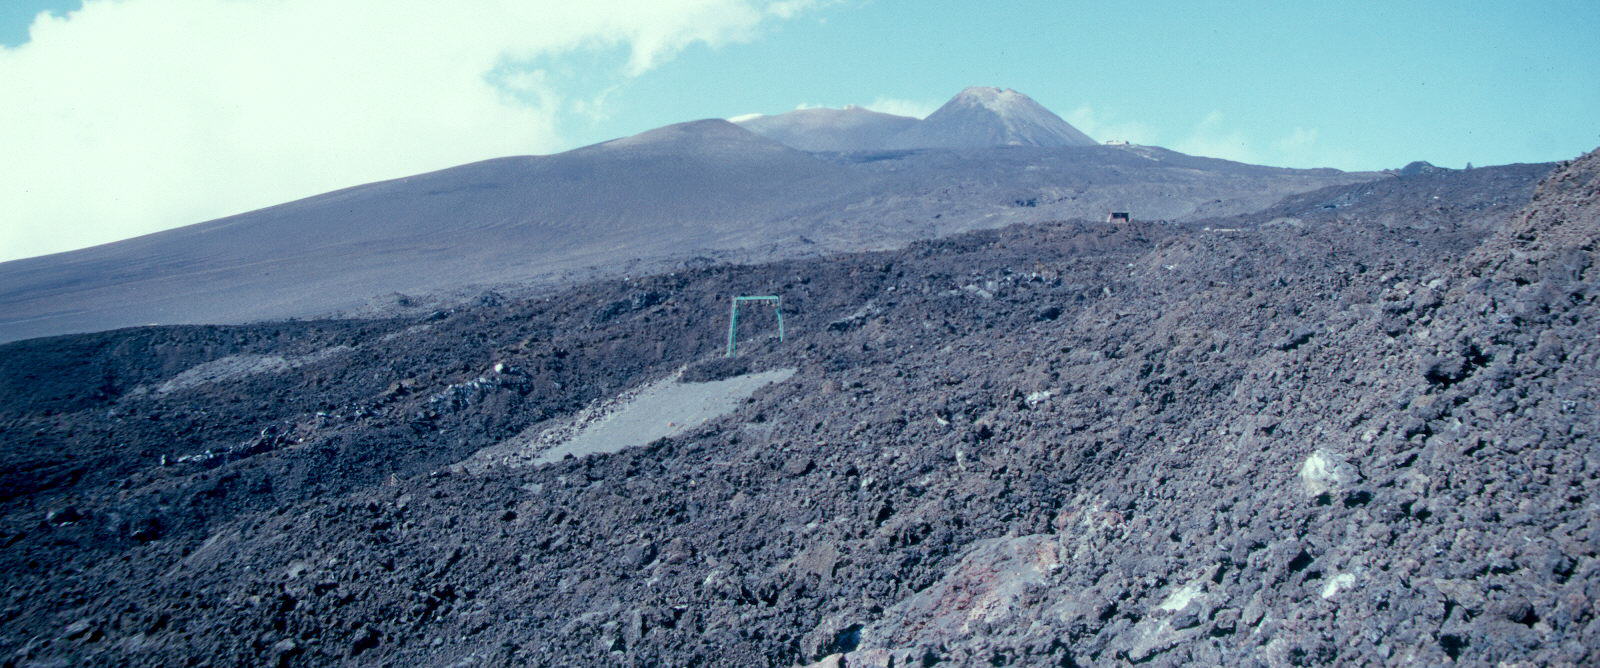 2001. Coladas en la ladera meridional. Se observa la estación y las torres destruídas de La Funivia